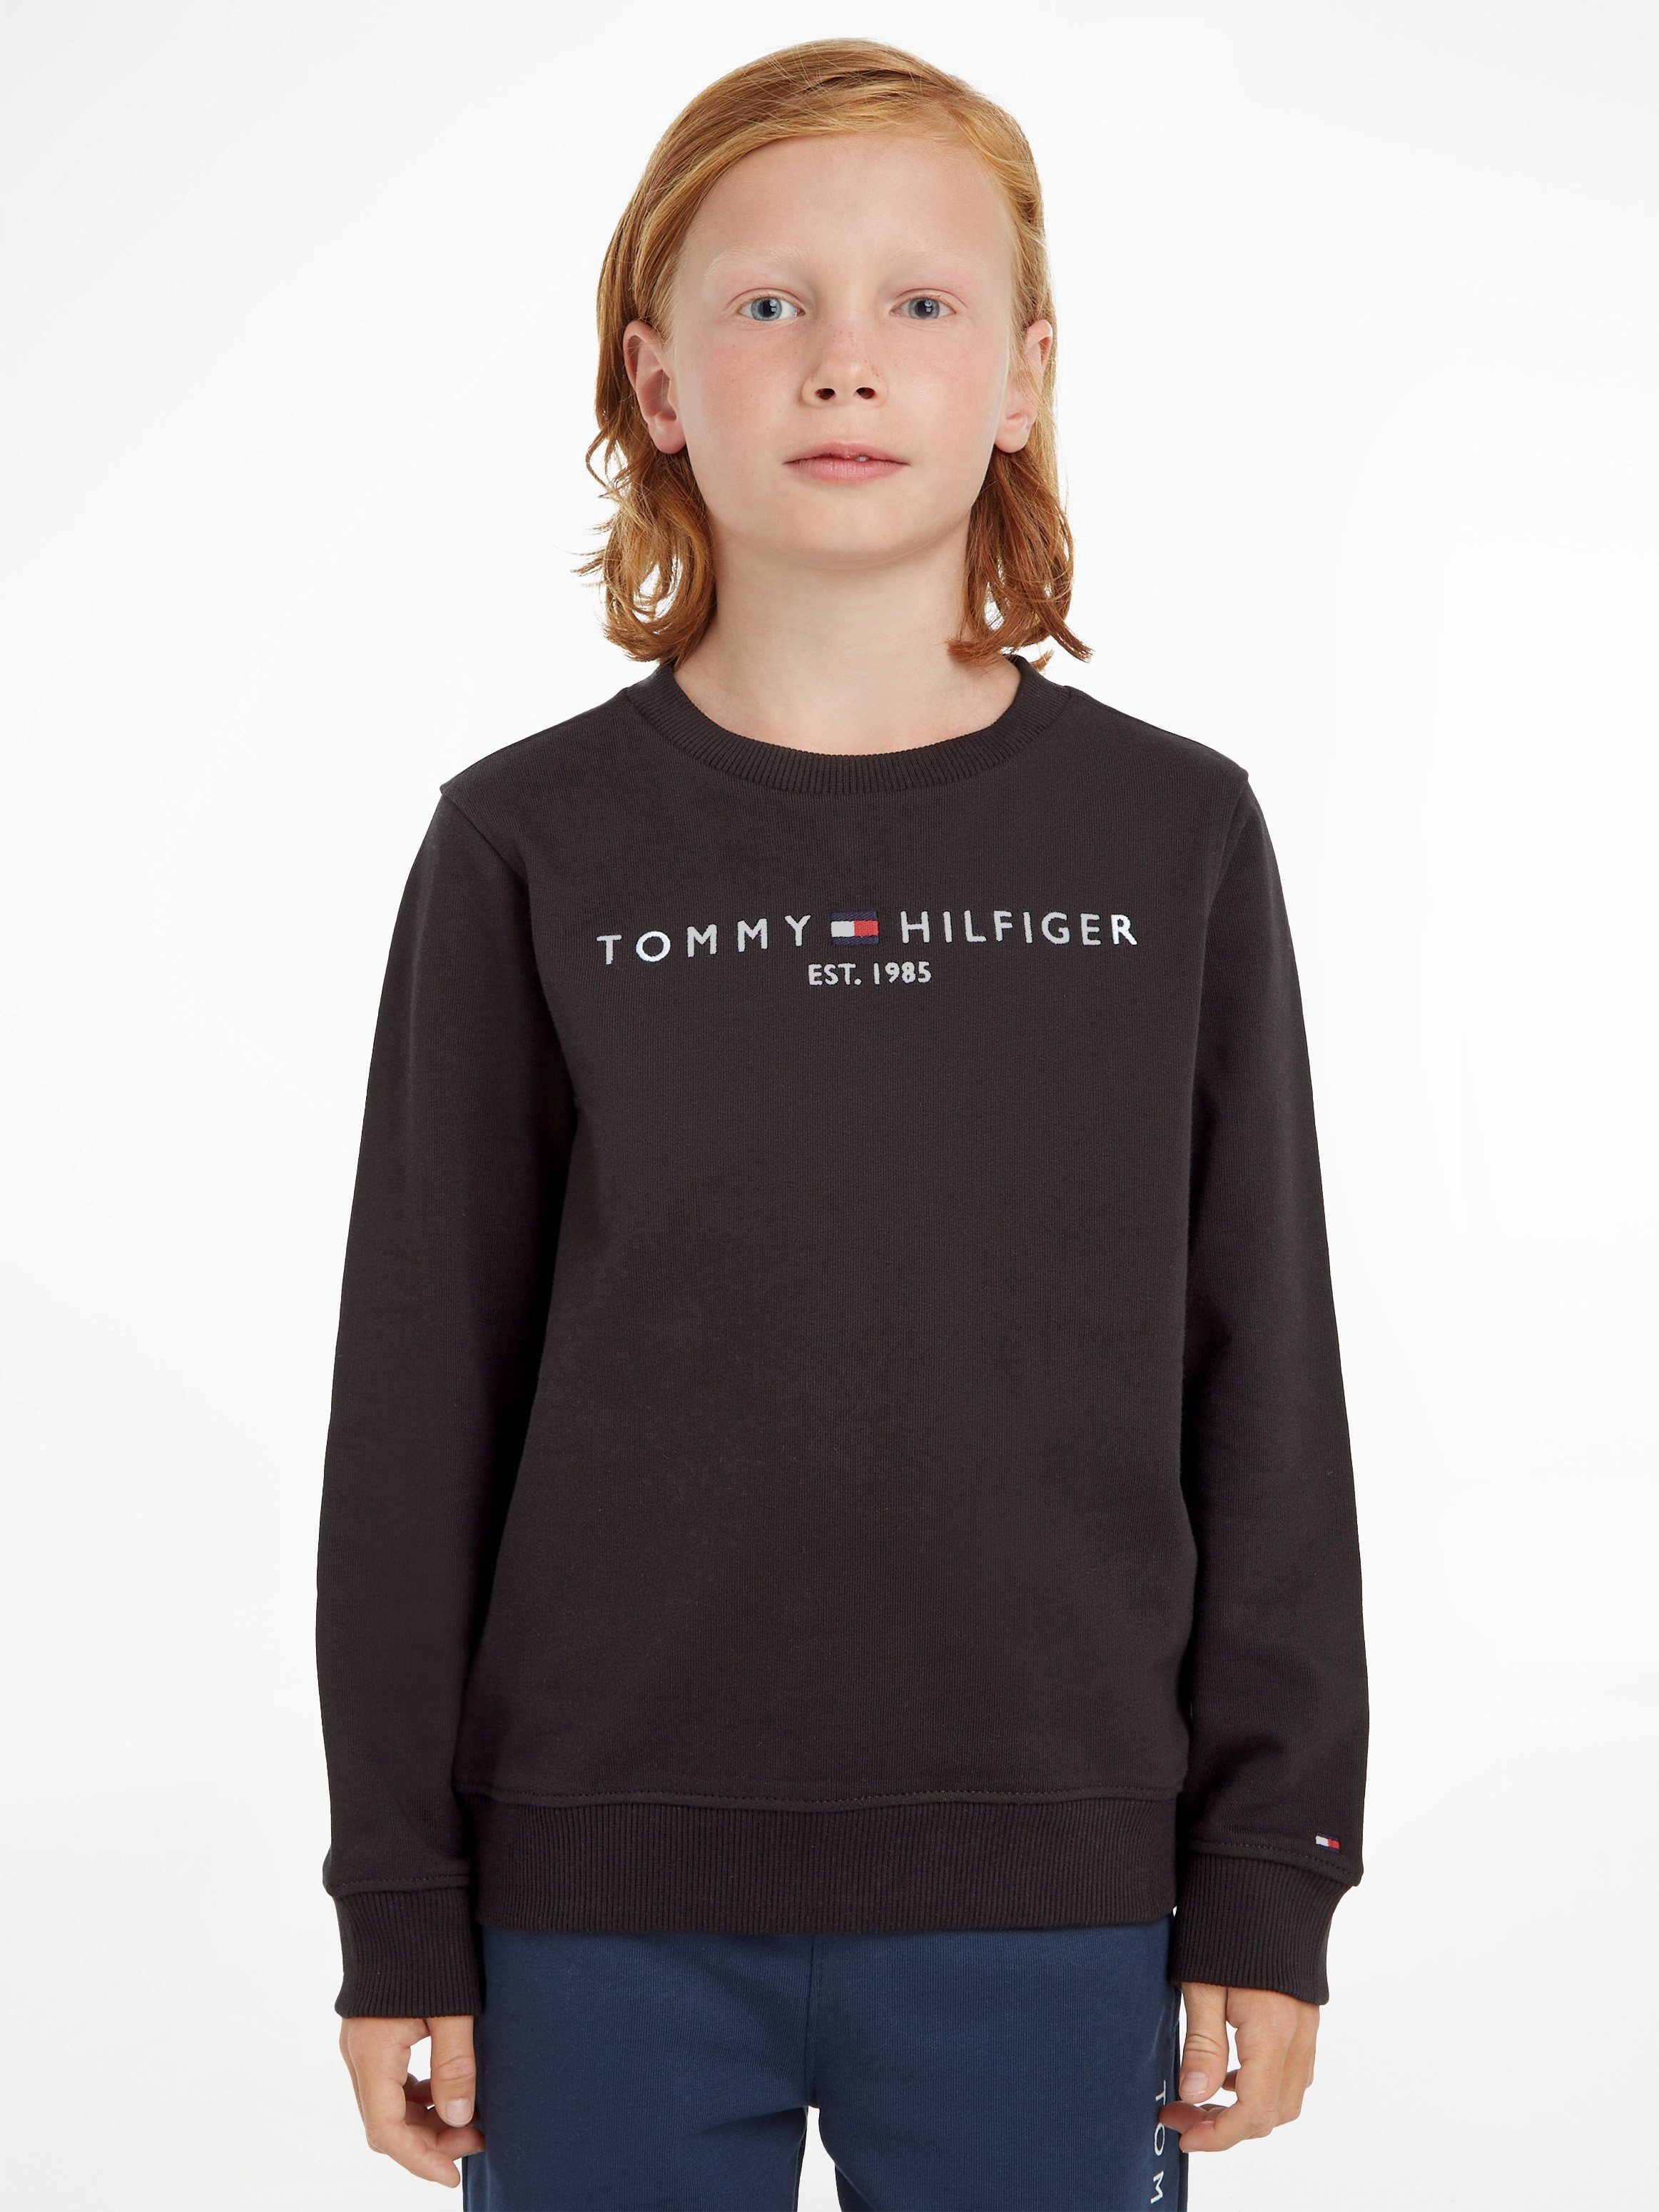 SWEATSHIRT für und Sweatshirt ESSENTIAL Mädchen Jungen Tommy Hilfiger